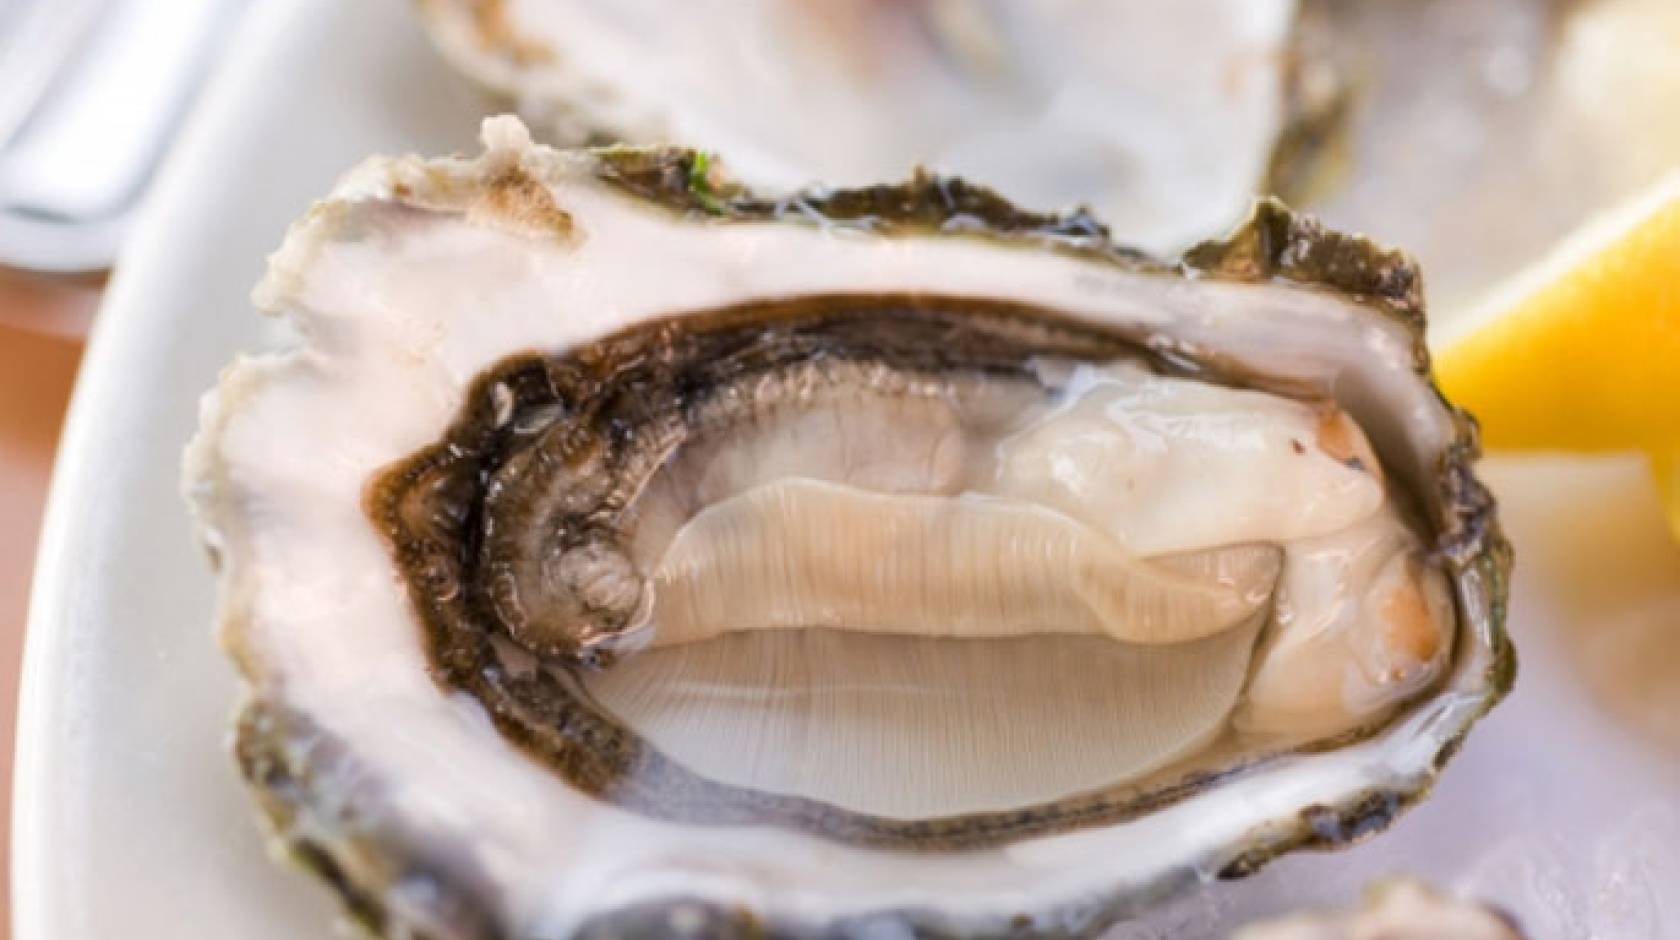 An open oyster